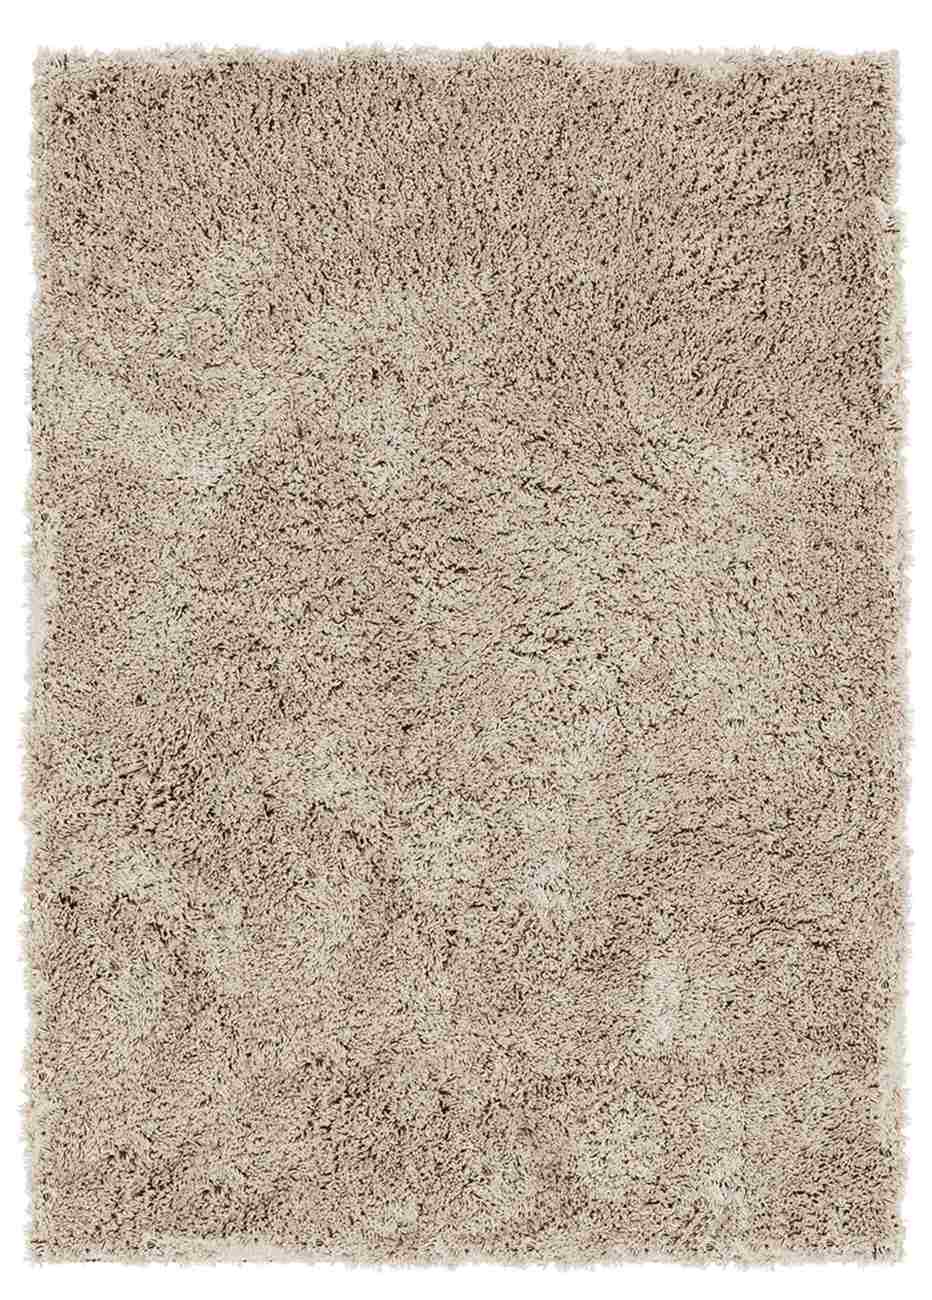 Der Teppich Celeste überzeugt mit seinem modernen Design. Gefertigt wurde er aus Kunstfasern, welches einen Taupe Farbton besitzt. Der Teppich besitzt eine Größe von 170x240 cm.